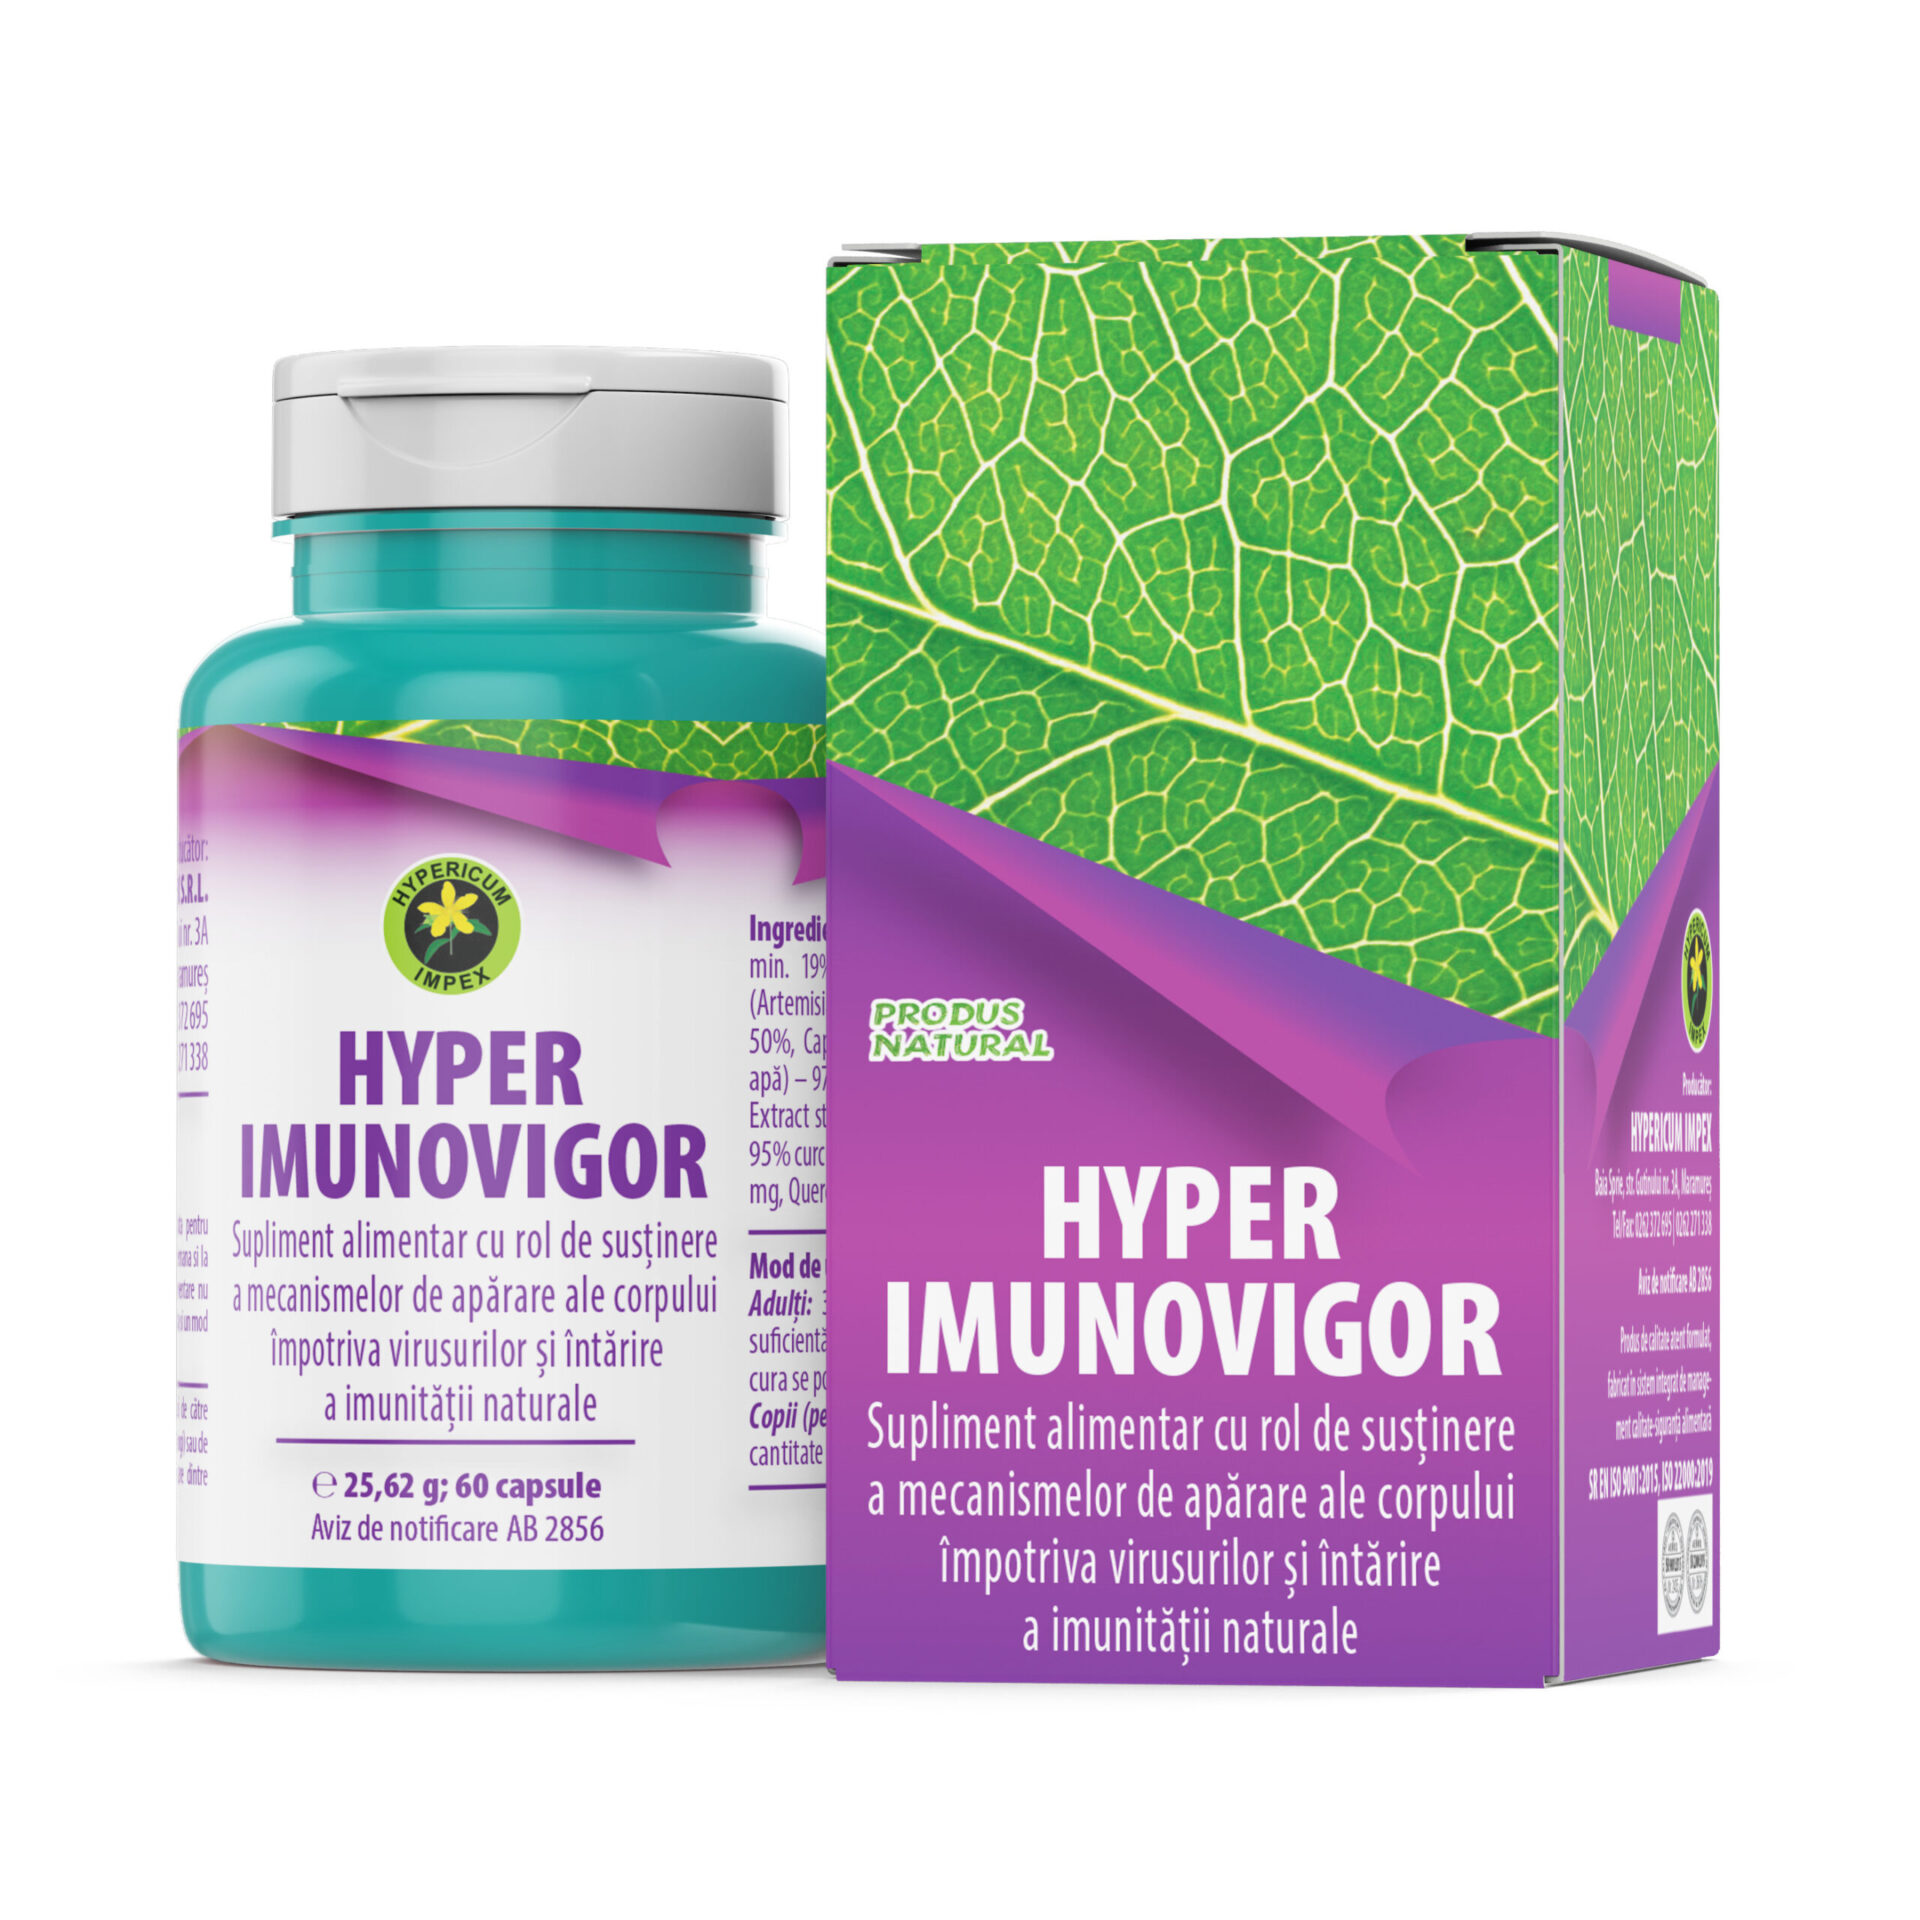 Capsule Hyper Imunovigor este un produs atent formulat pentru a susține mecanismele de apărare ale corpului împotriva virusurilor.